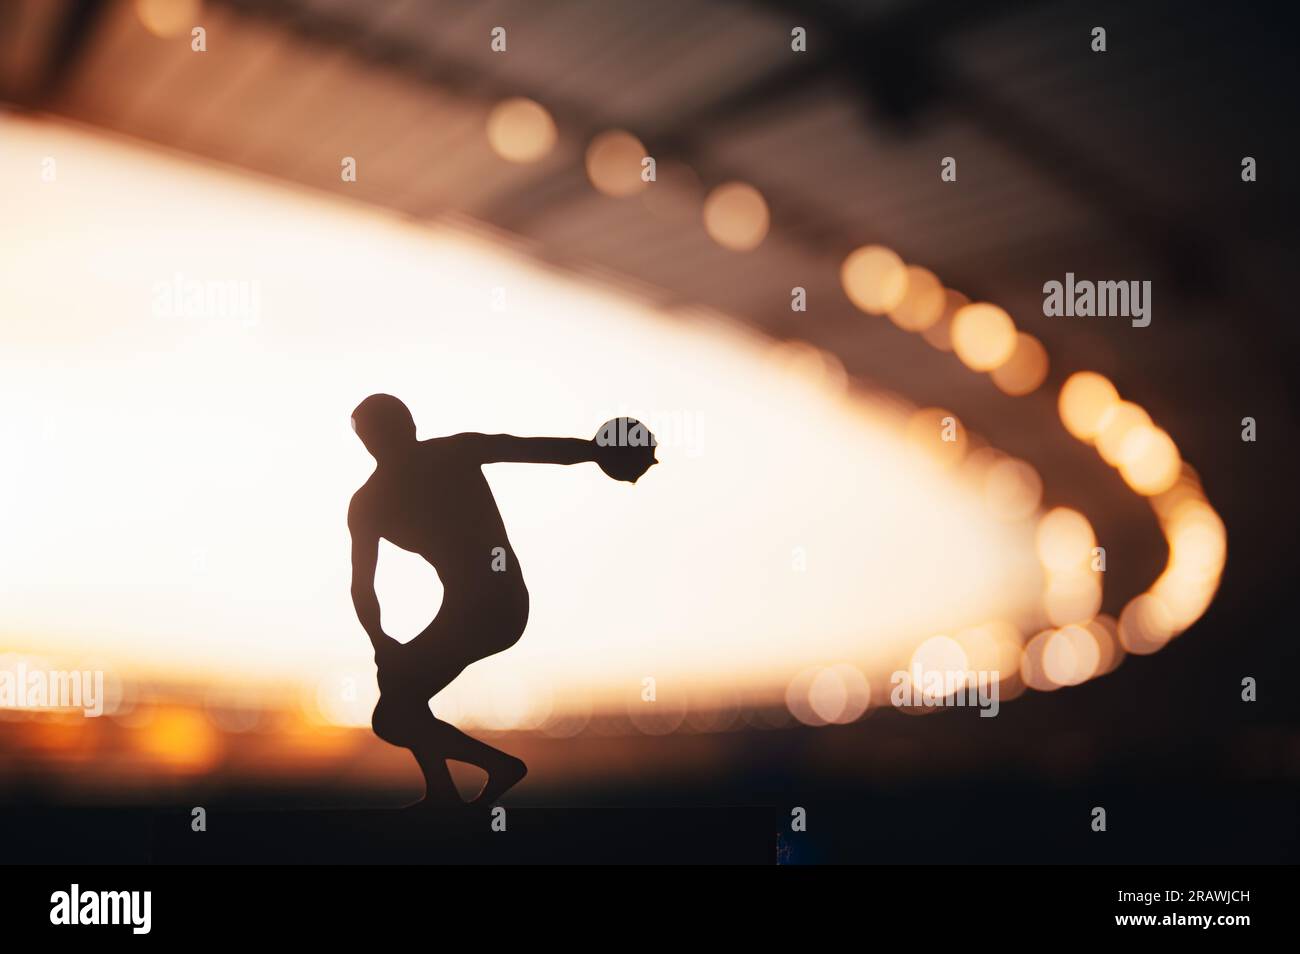 Silueta de atleta, Discus elevándose en el impresionante resplandor de la noche. Foto de pista y campo para los Juegos de Verano en París. Foto de stock